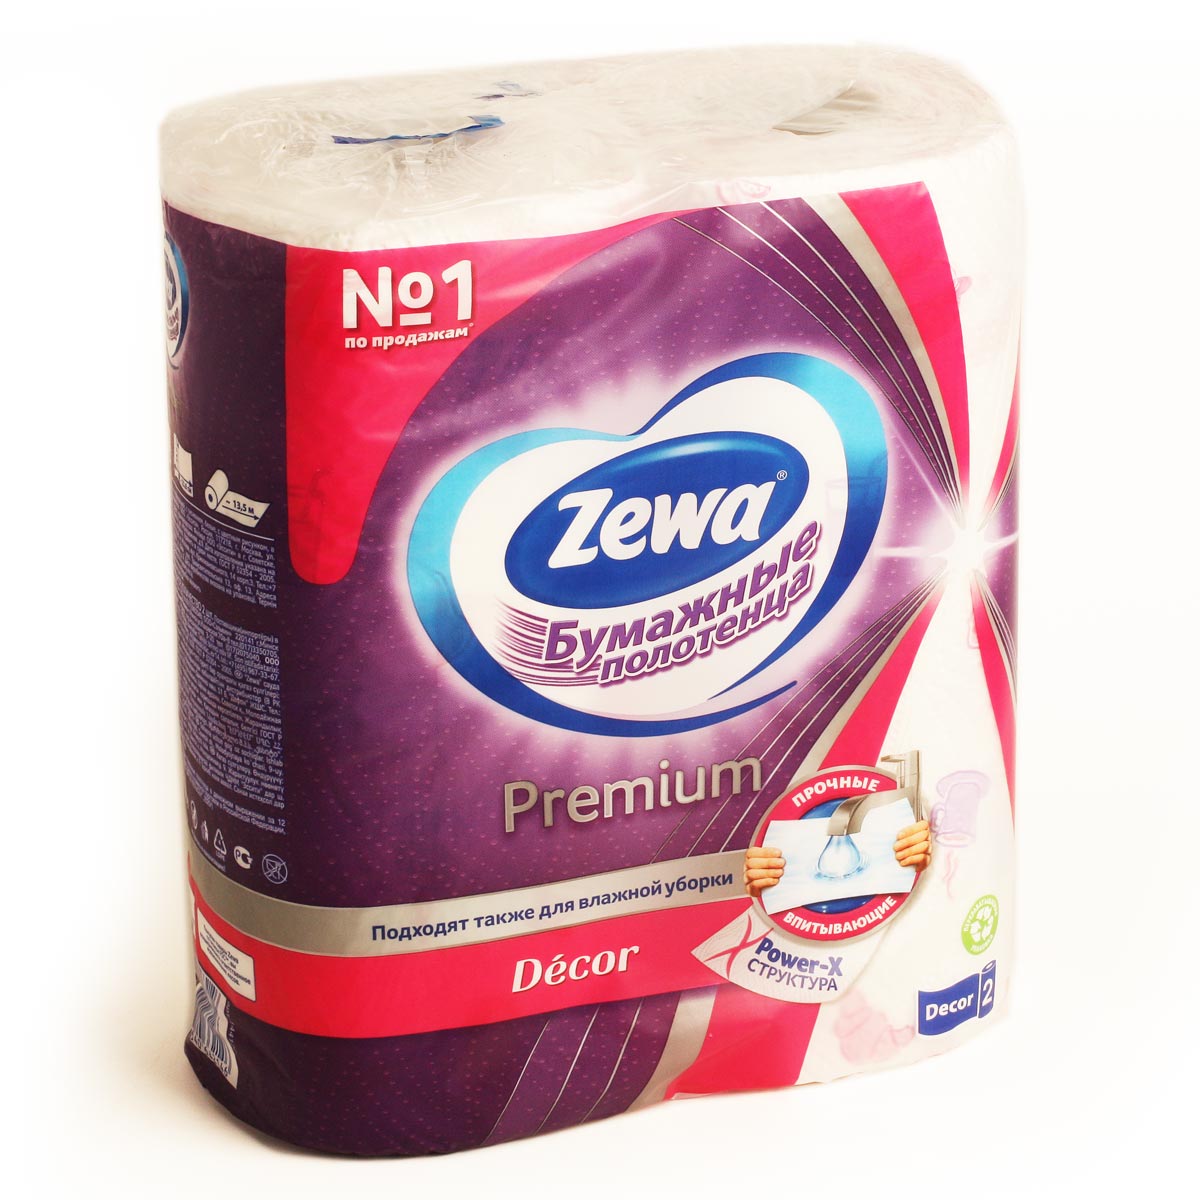 ZEWA бумажные полотенца Зева Premium Decor 2 слоя 2 рулона